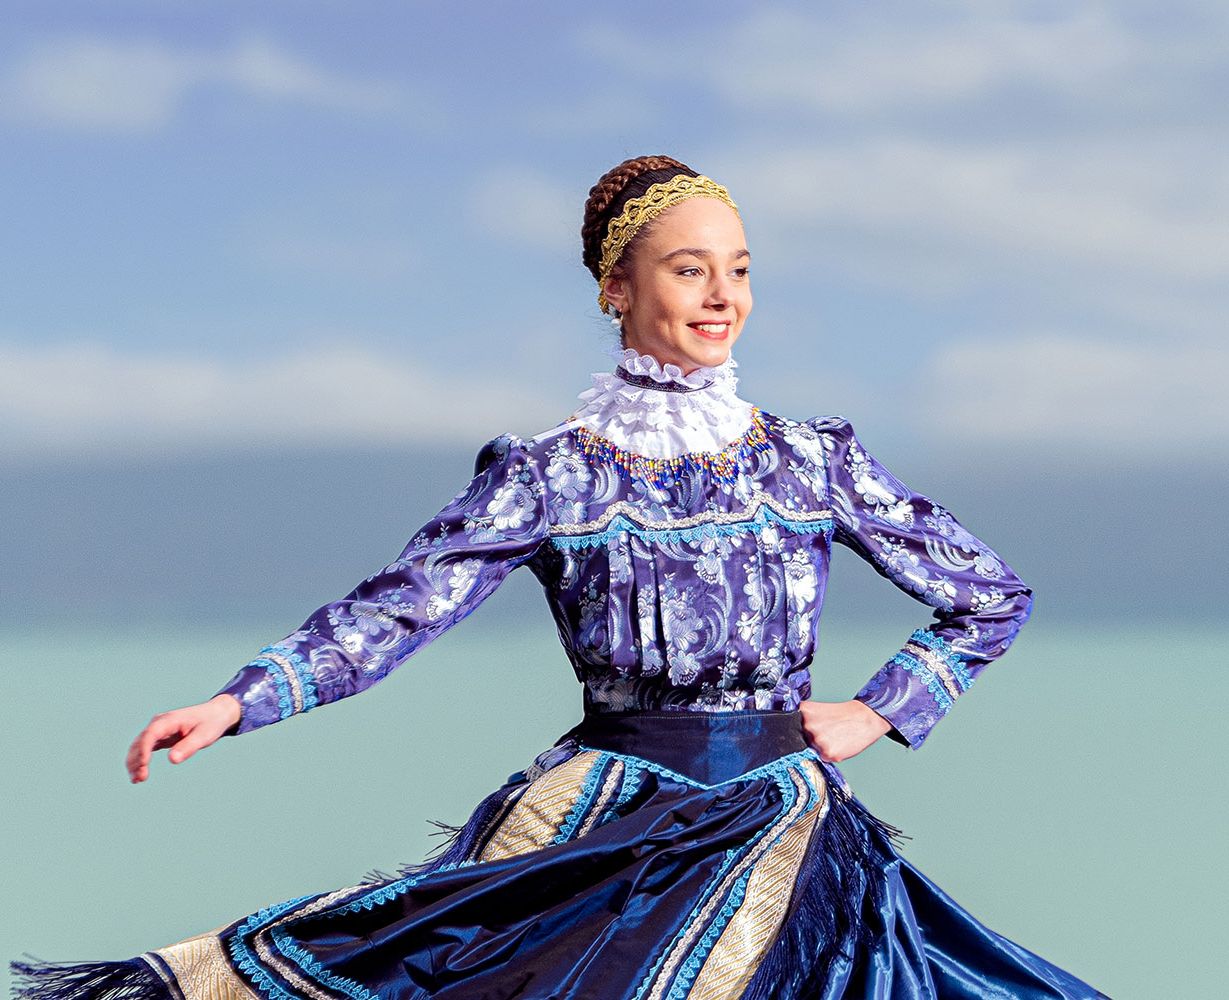 Keszthelyi Táncpanoráma - Kortárs balett, néptánc és gyermekelőadások a fesztiválon